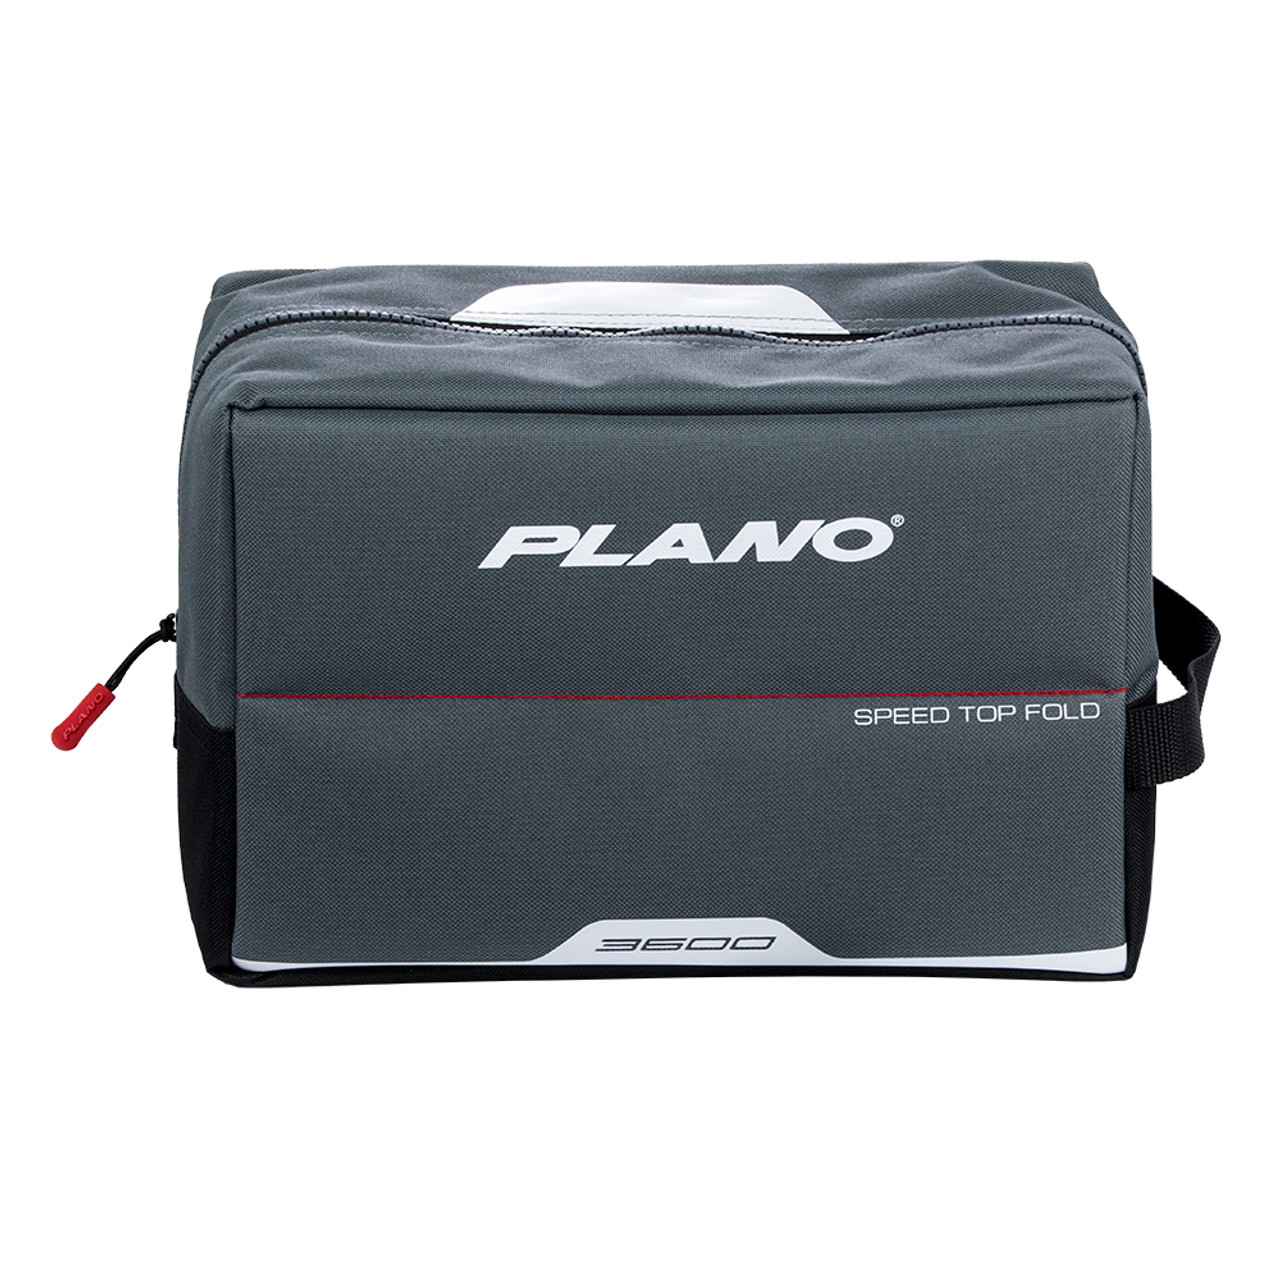 Plano 3600 Weekend Series Speedbag